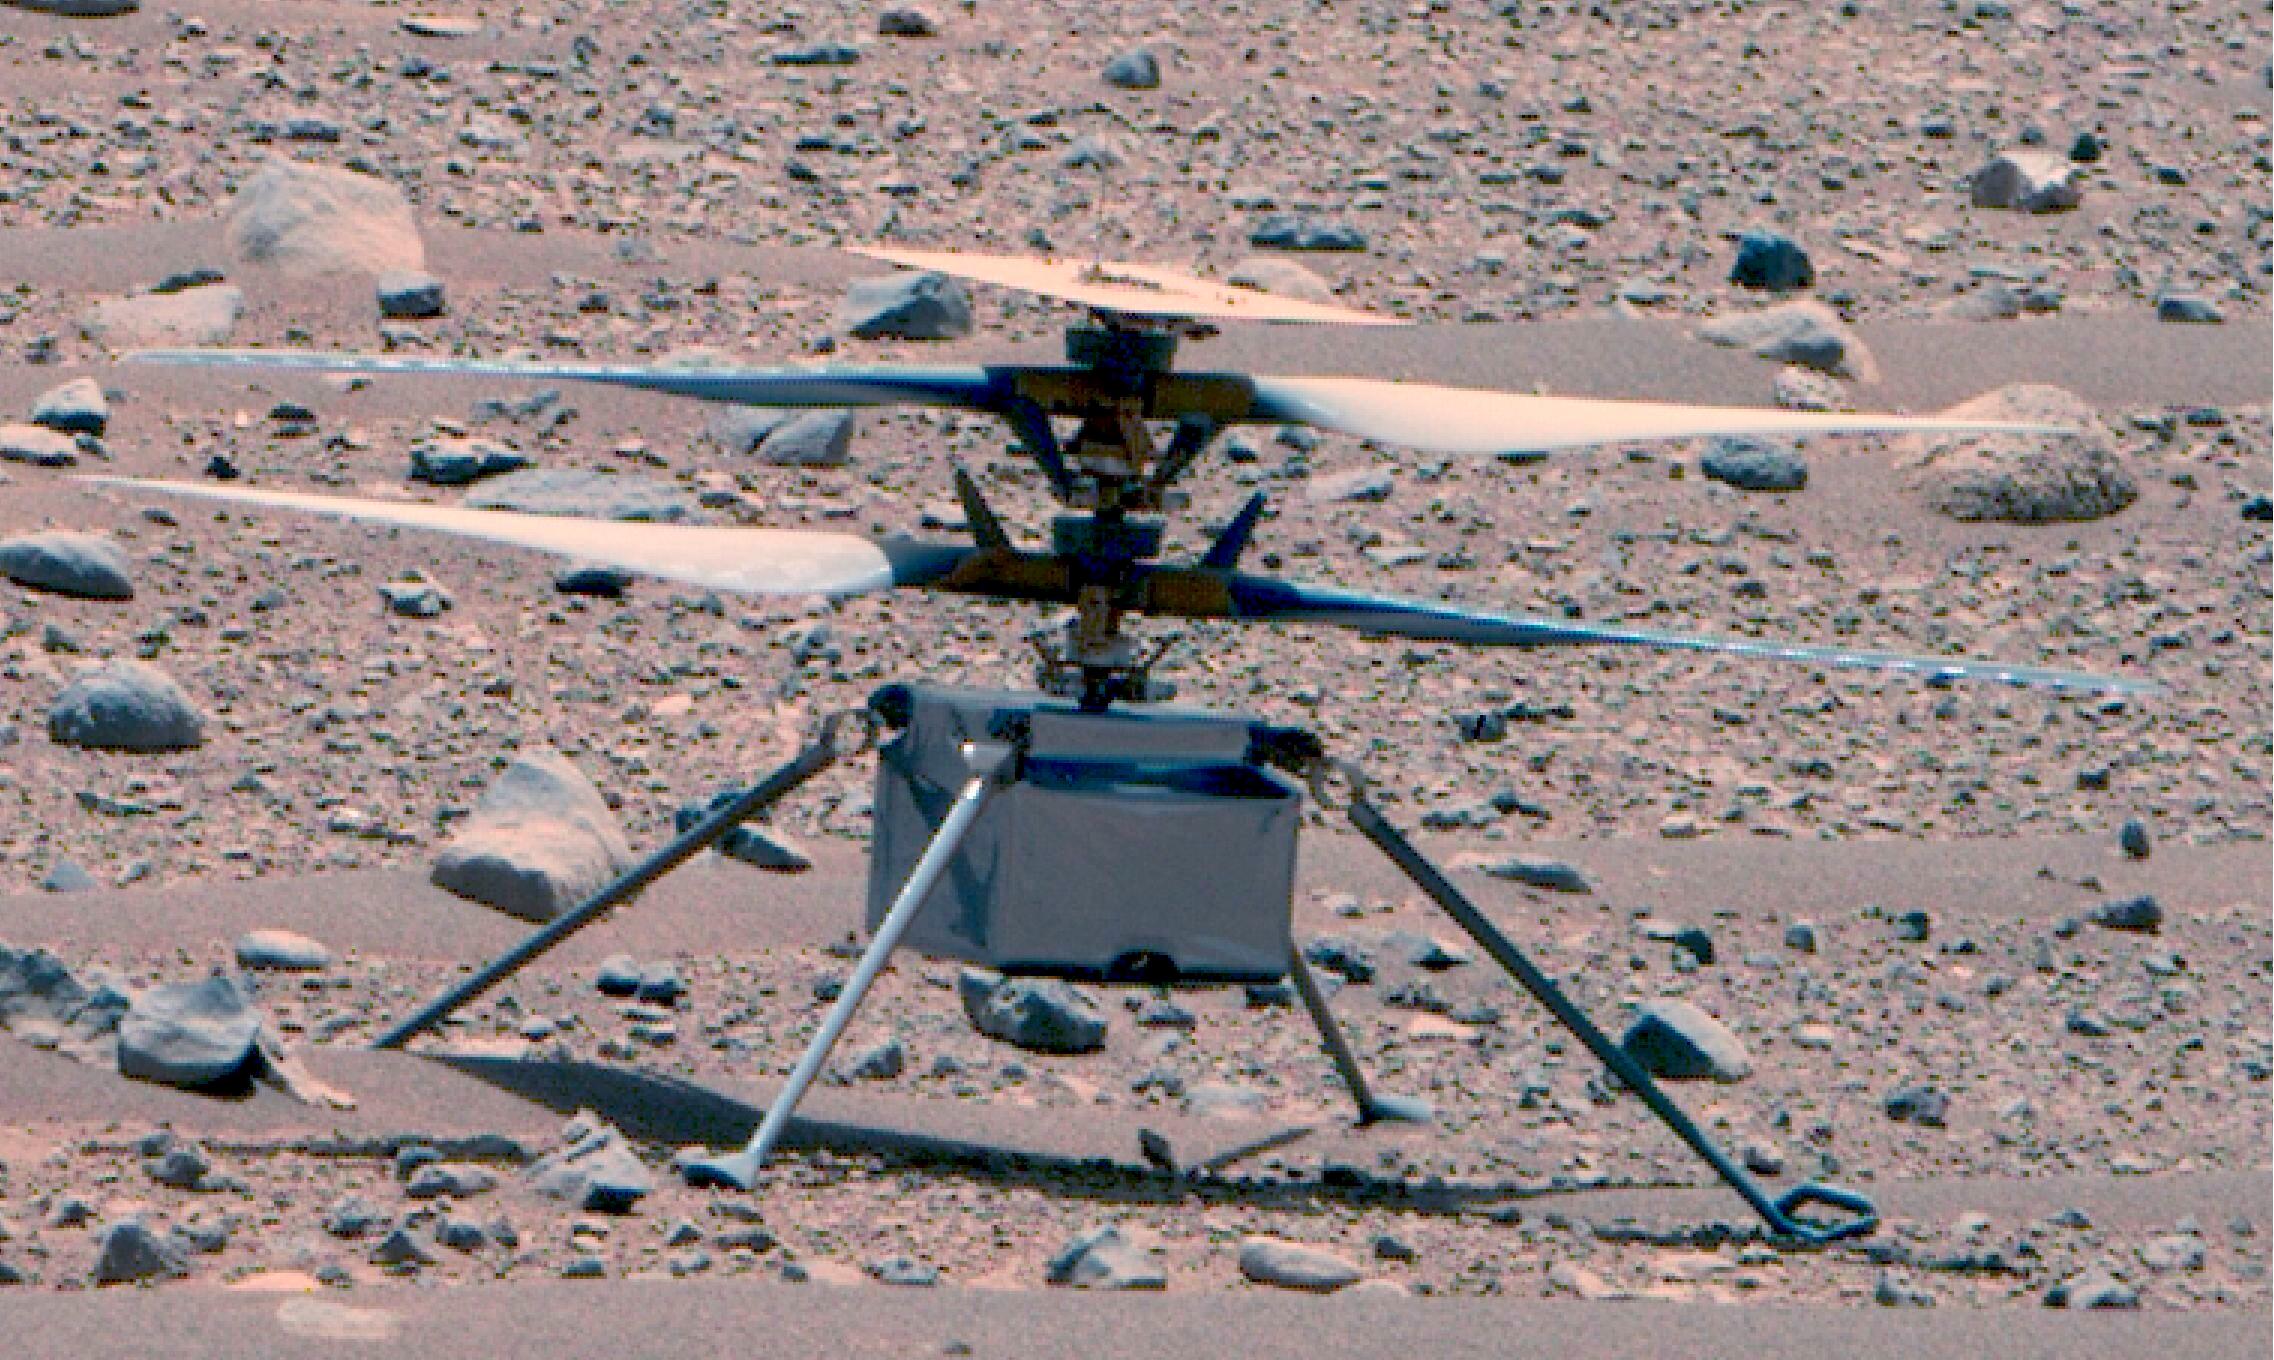 Une rare image d'Ingenuity, capturée le 16 avril par le robot martien Perseverance. NASA/JPL-Caltech/ASU/MSSS via CNP